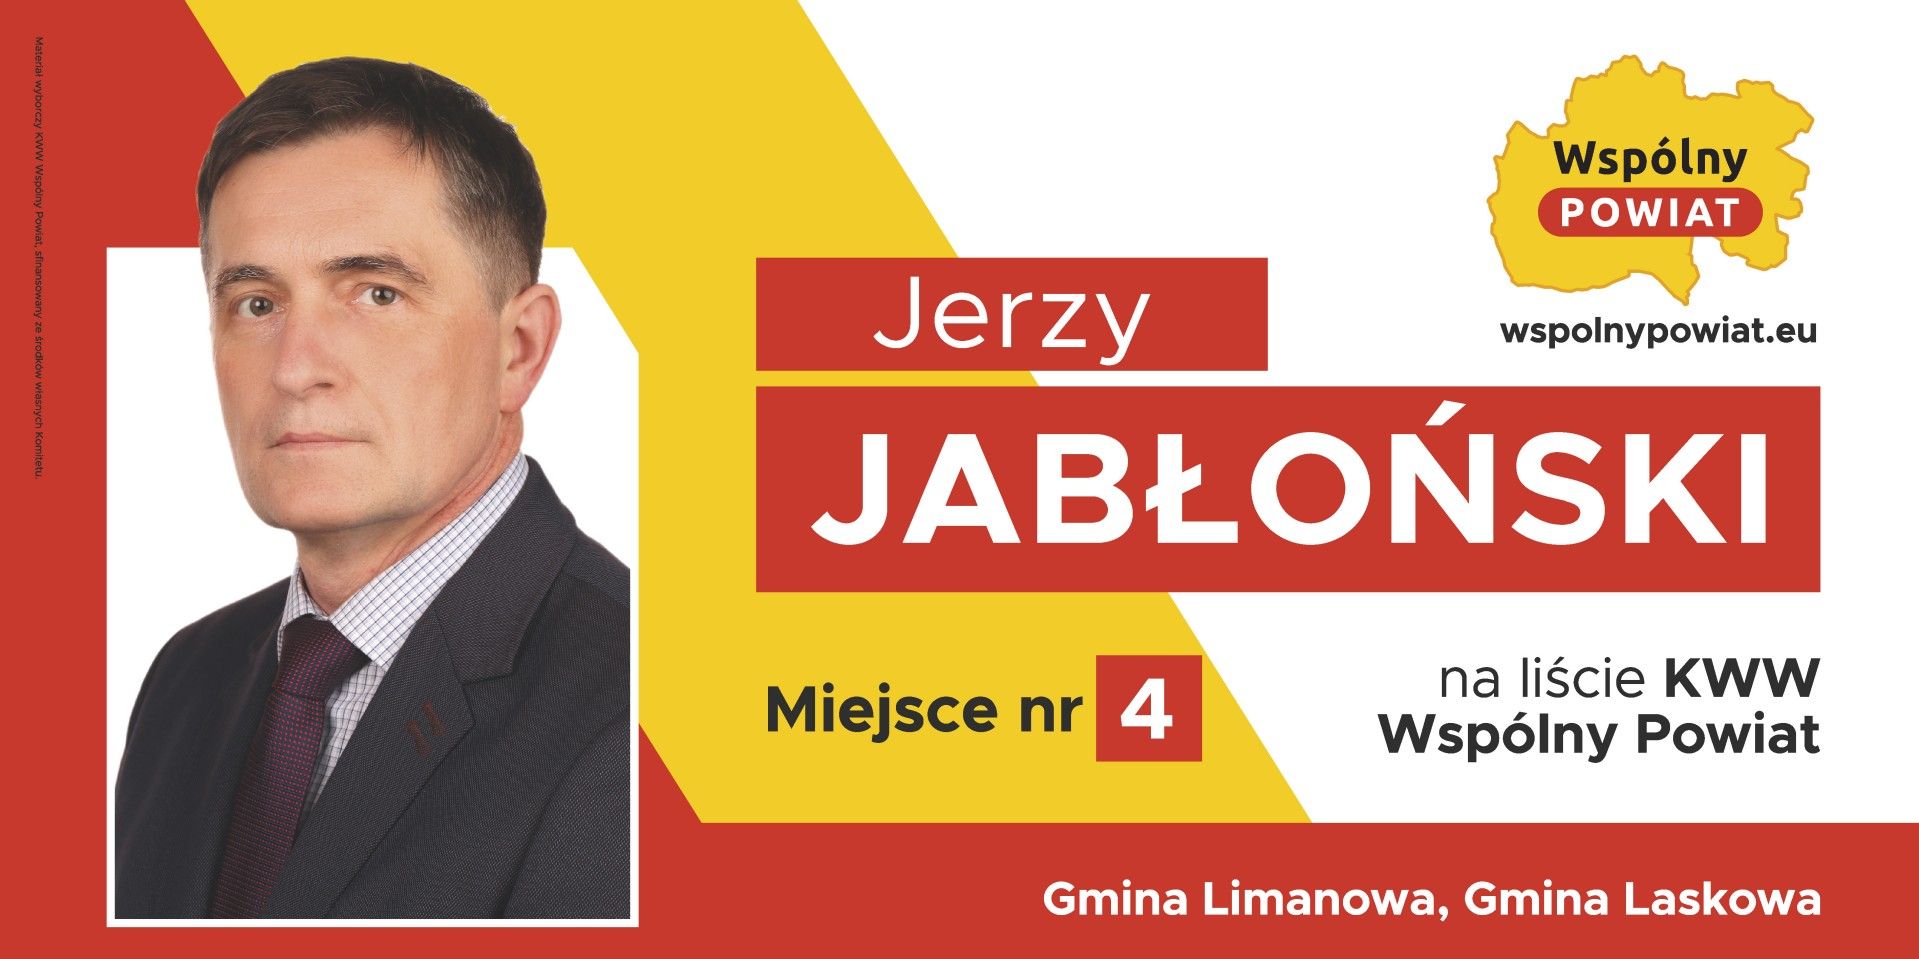 Jerzy Jabłoński